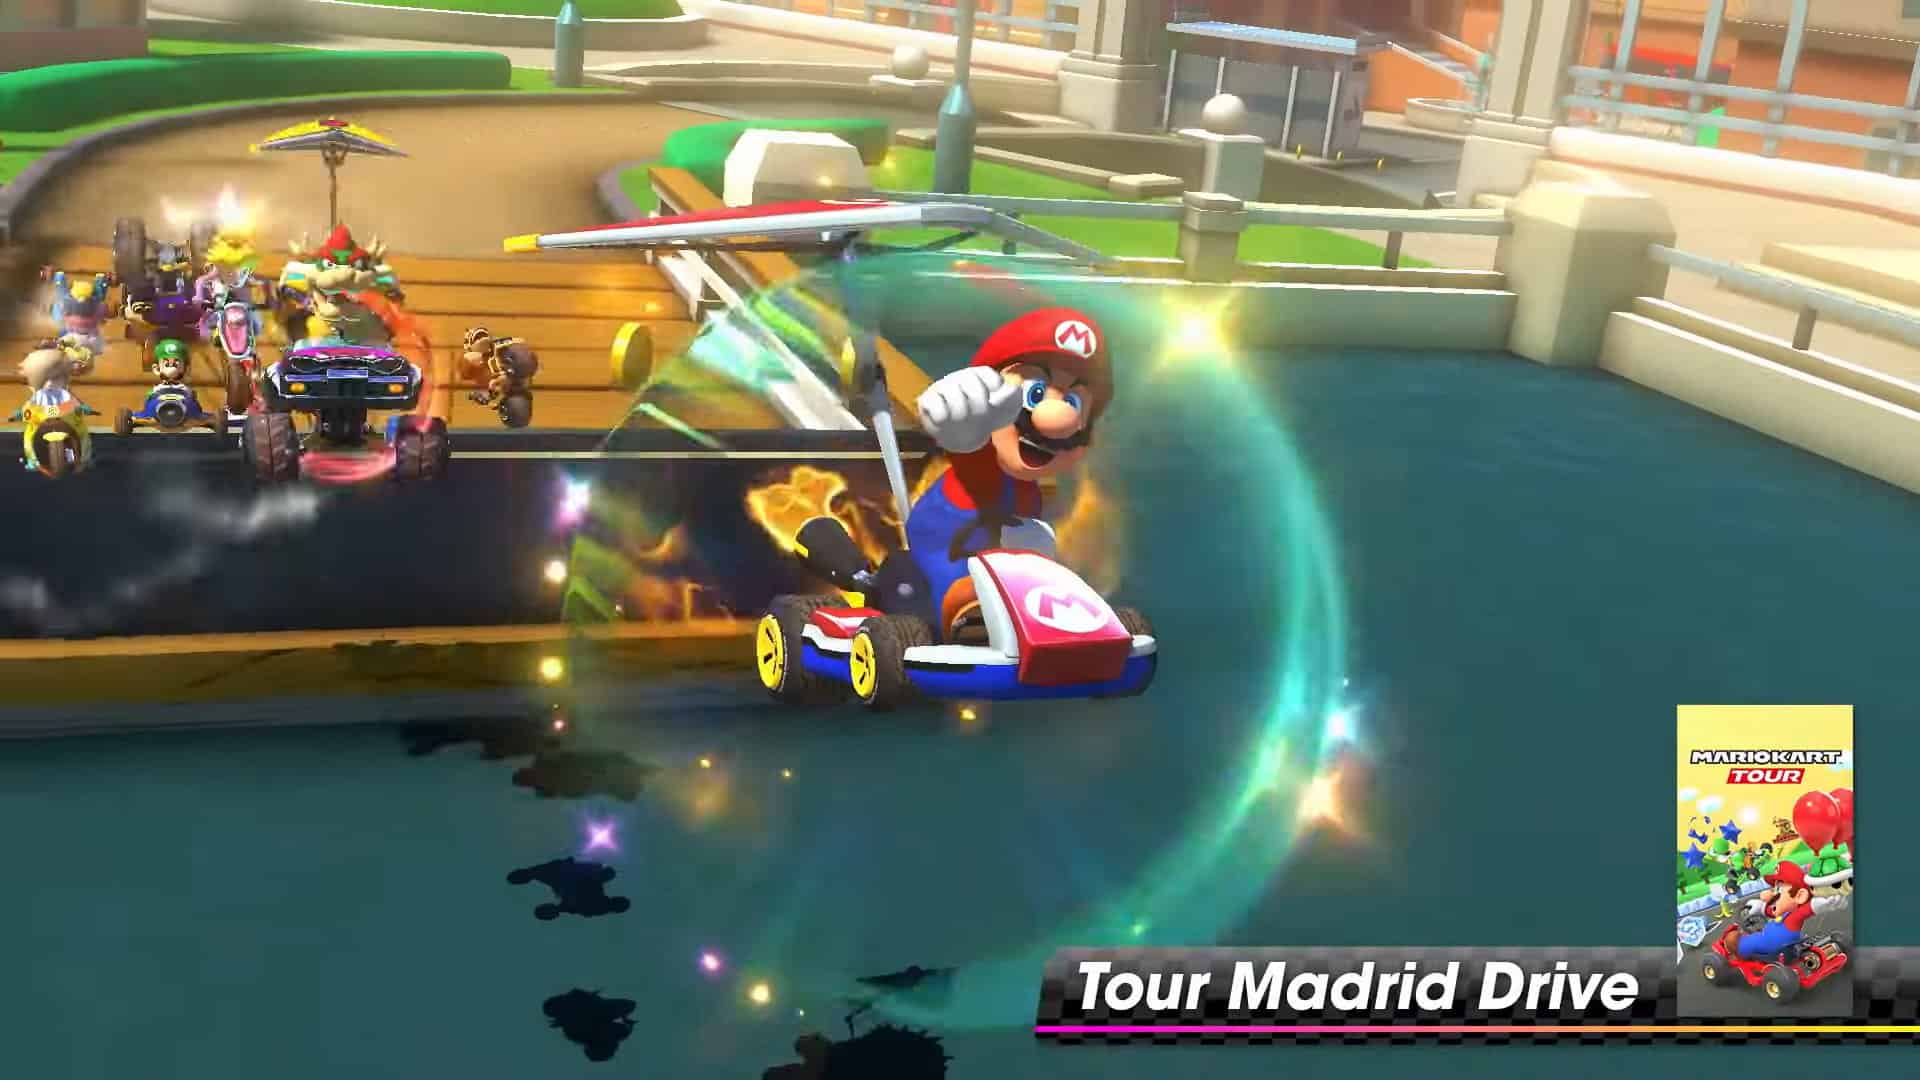 How long is Mario Kart 8 Deluxe?